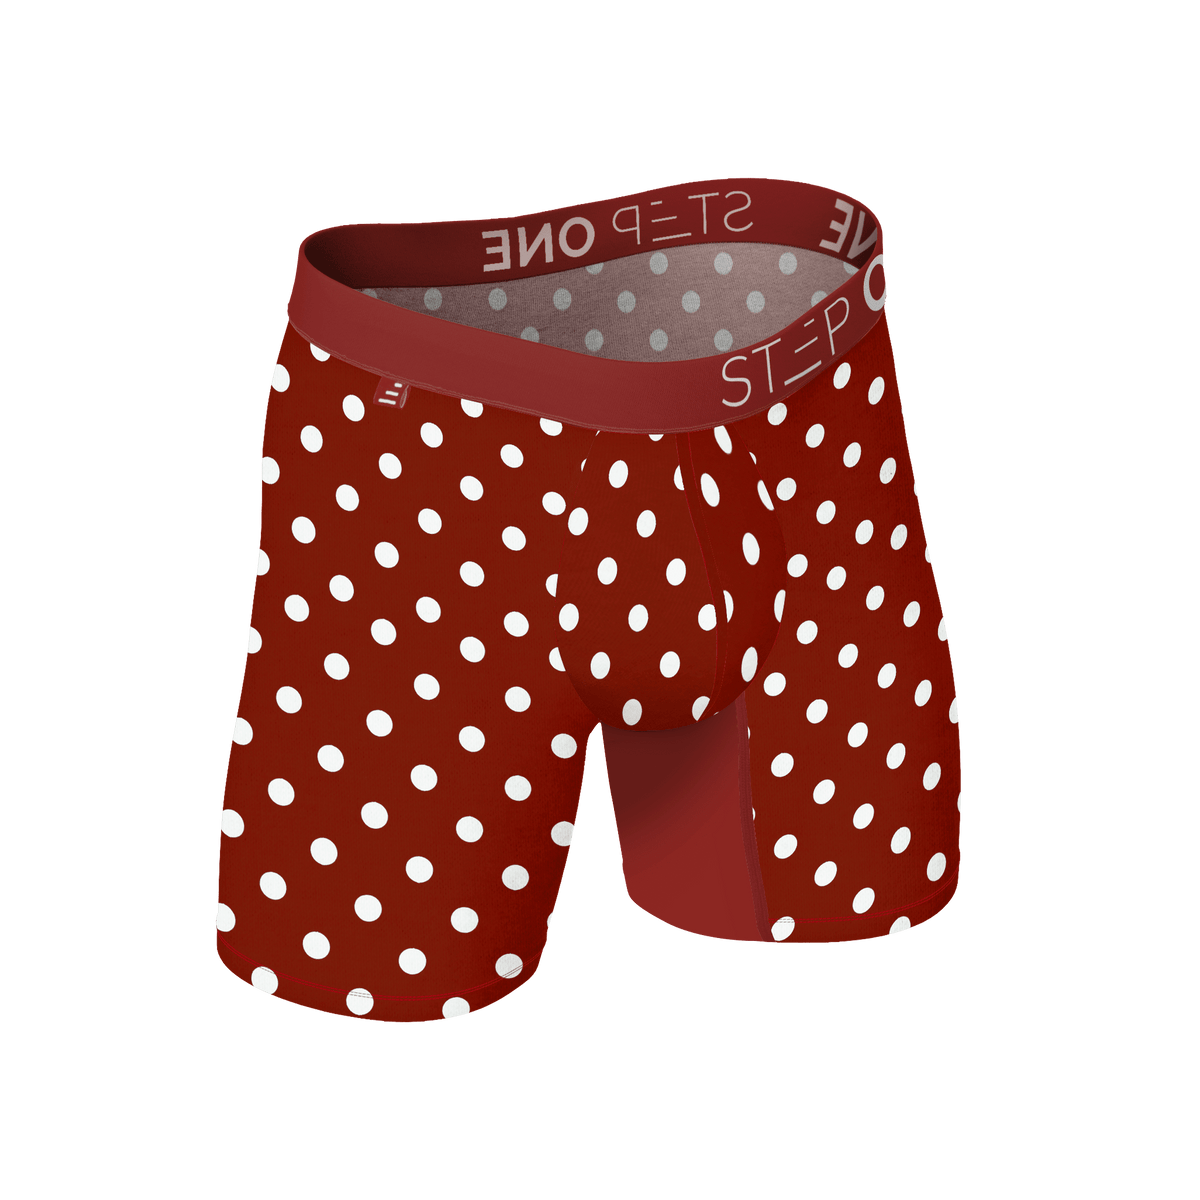 Boxer Brief - Jersey Cows | Step One Men's Underwear